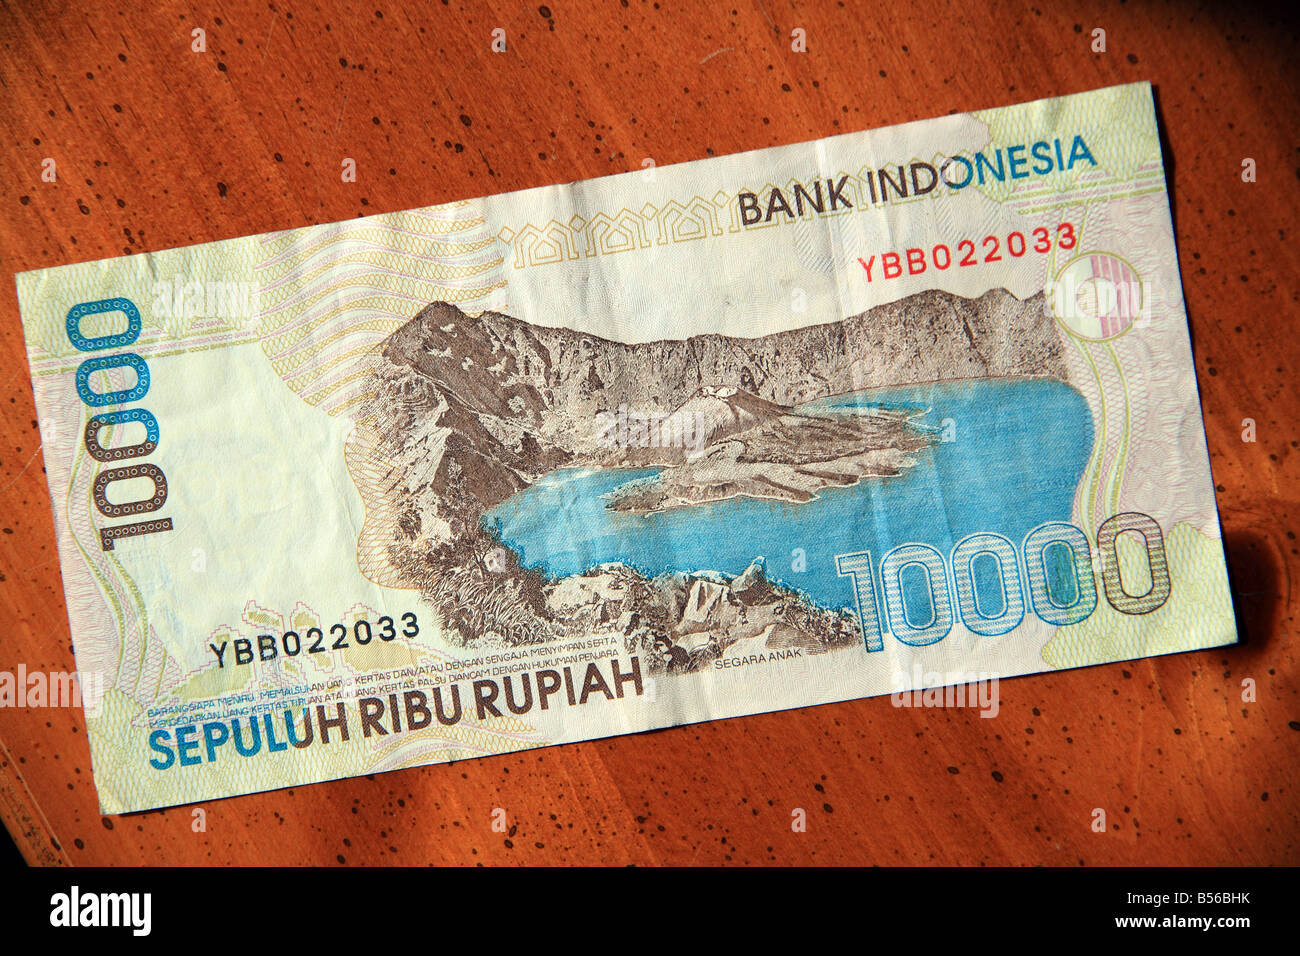 Indonesien 10000 Rupiah-Banknote auf Tisch Stockfoto